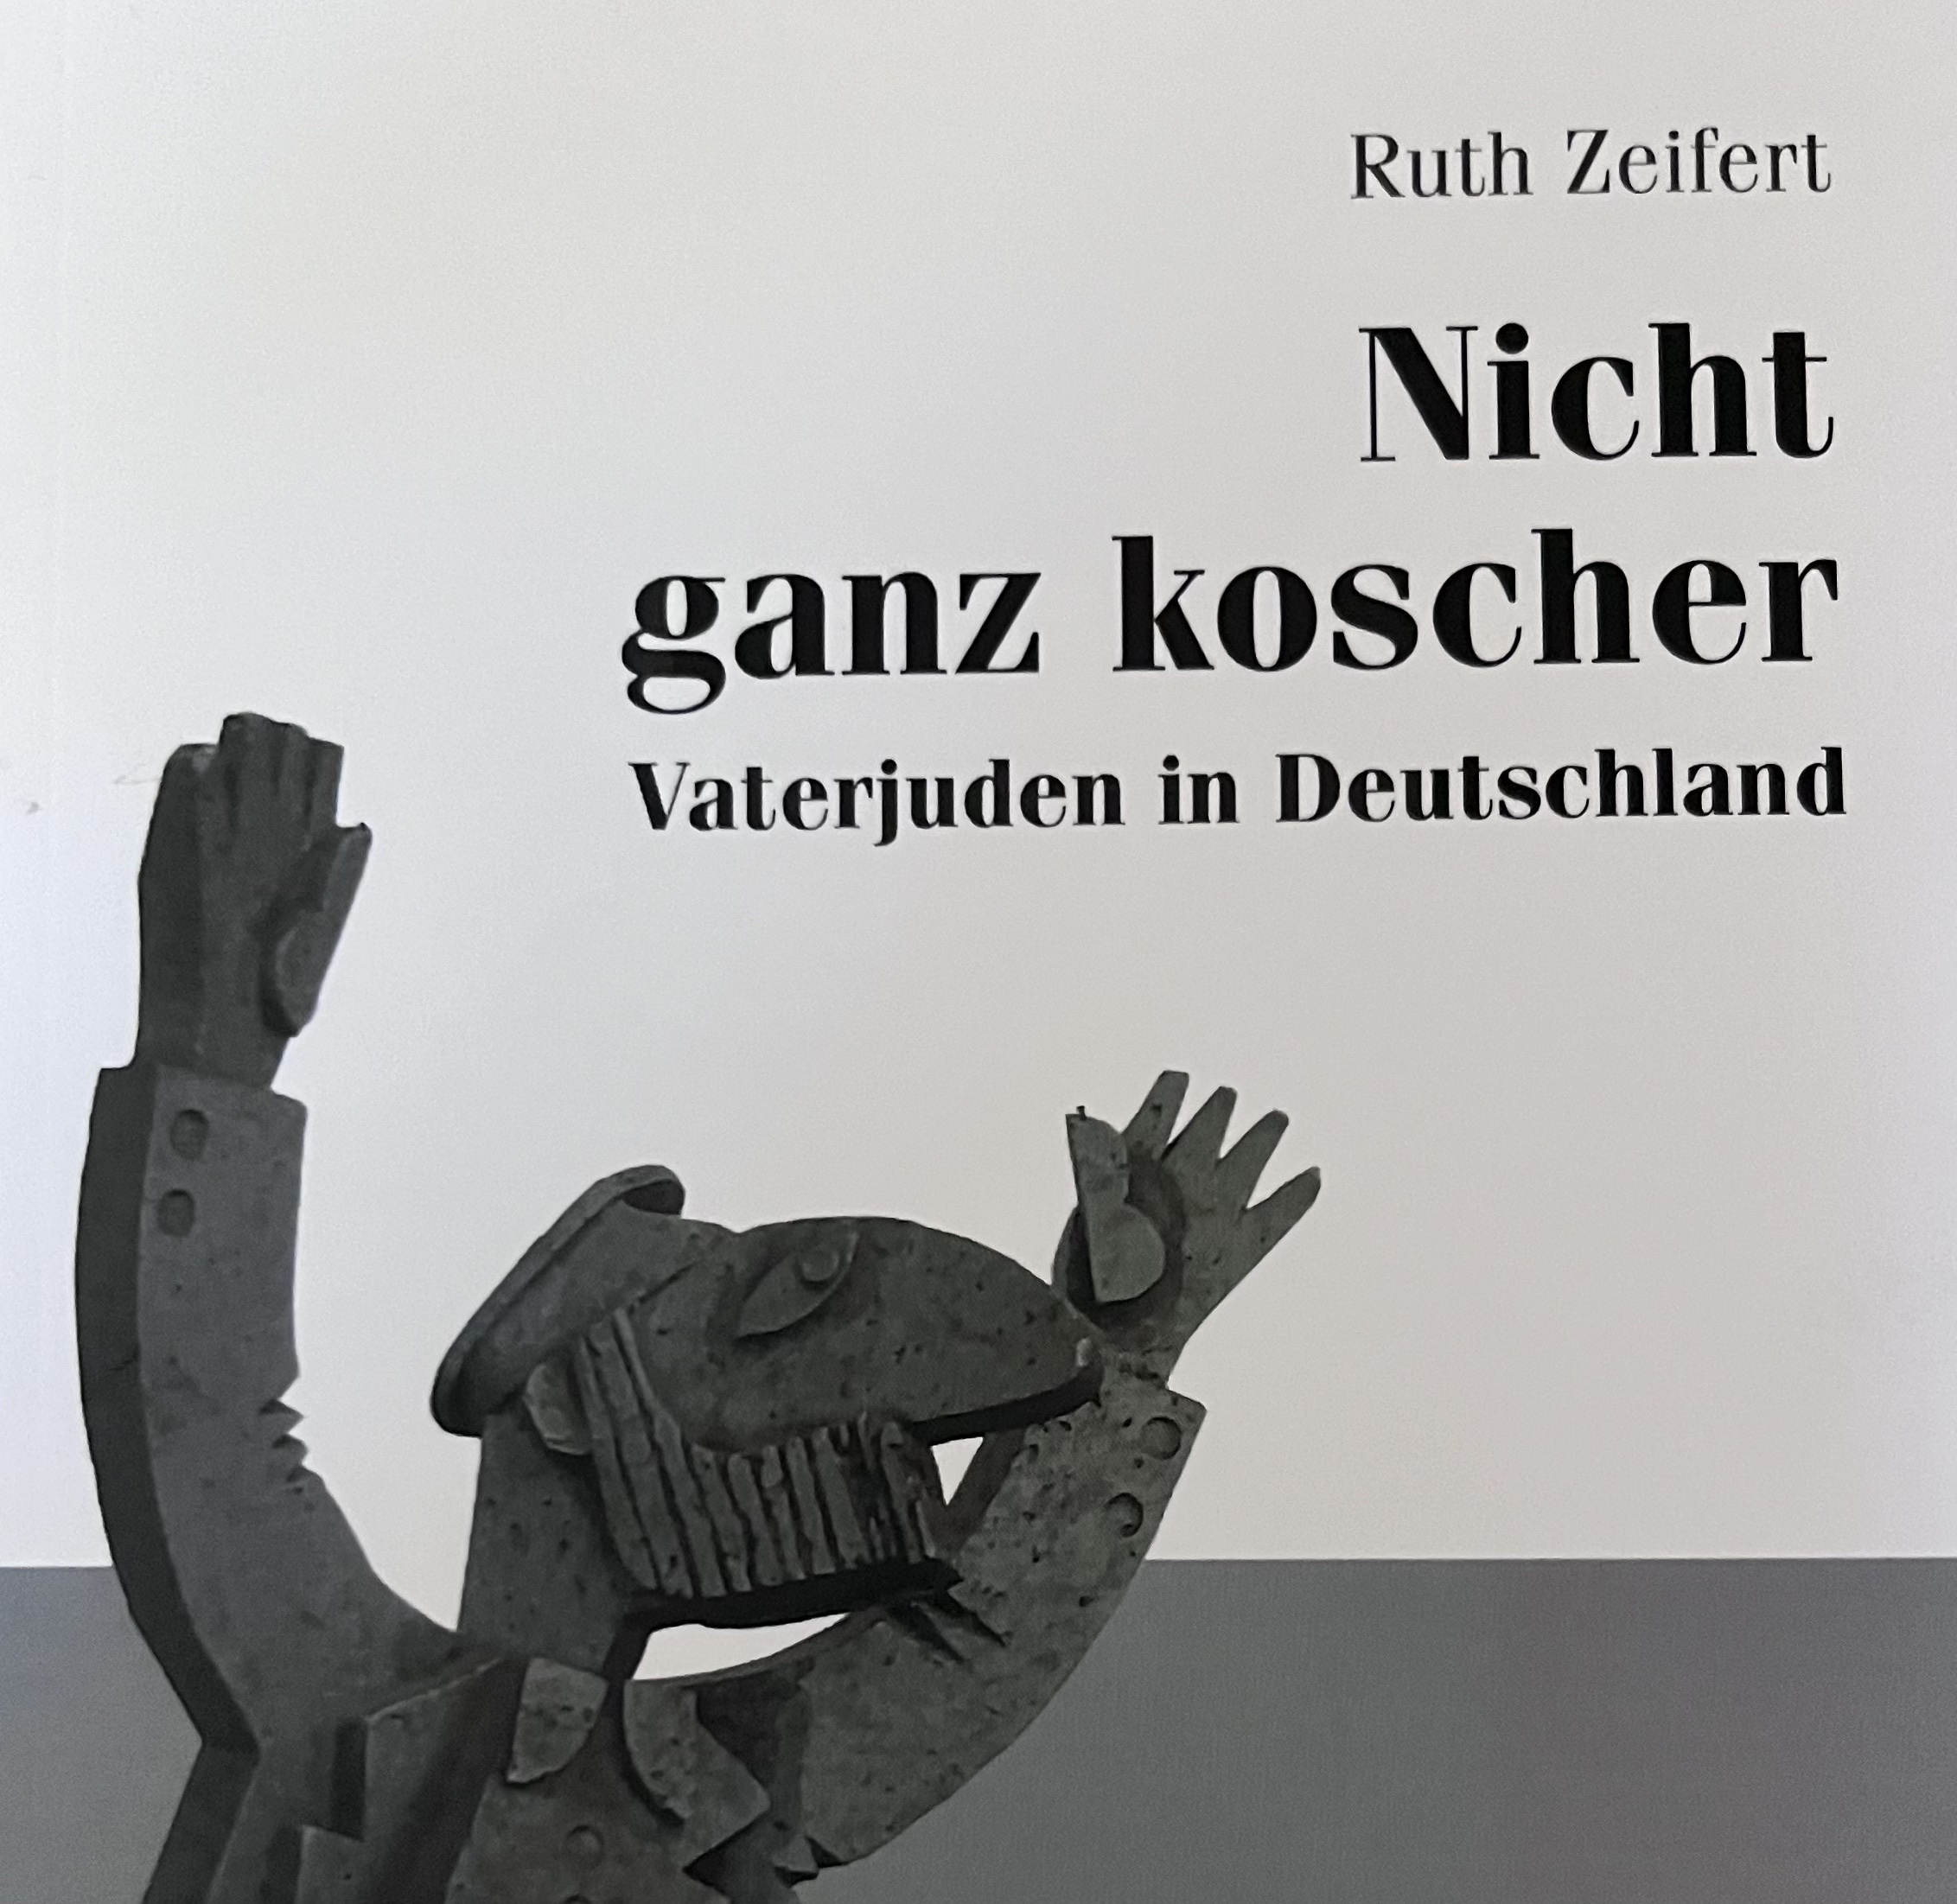 An image of the book "Nicht ganz Koscher" written by Dr. Ruth Zeifert, which translates to "not quite kosher."